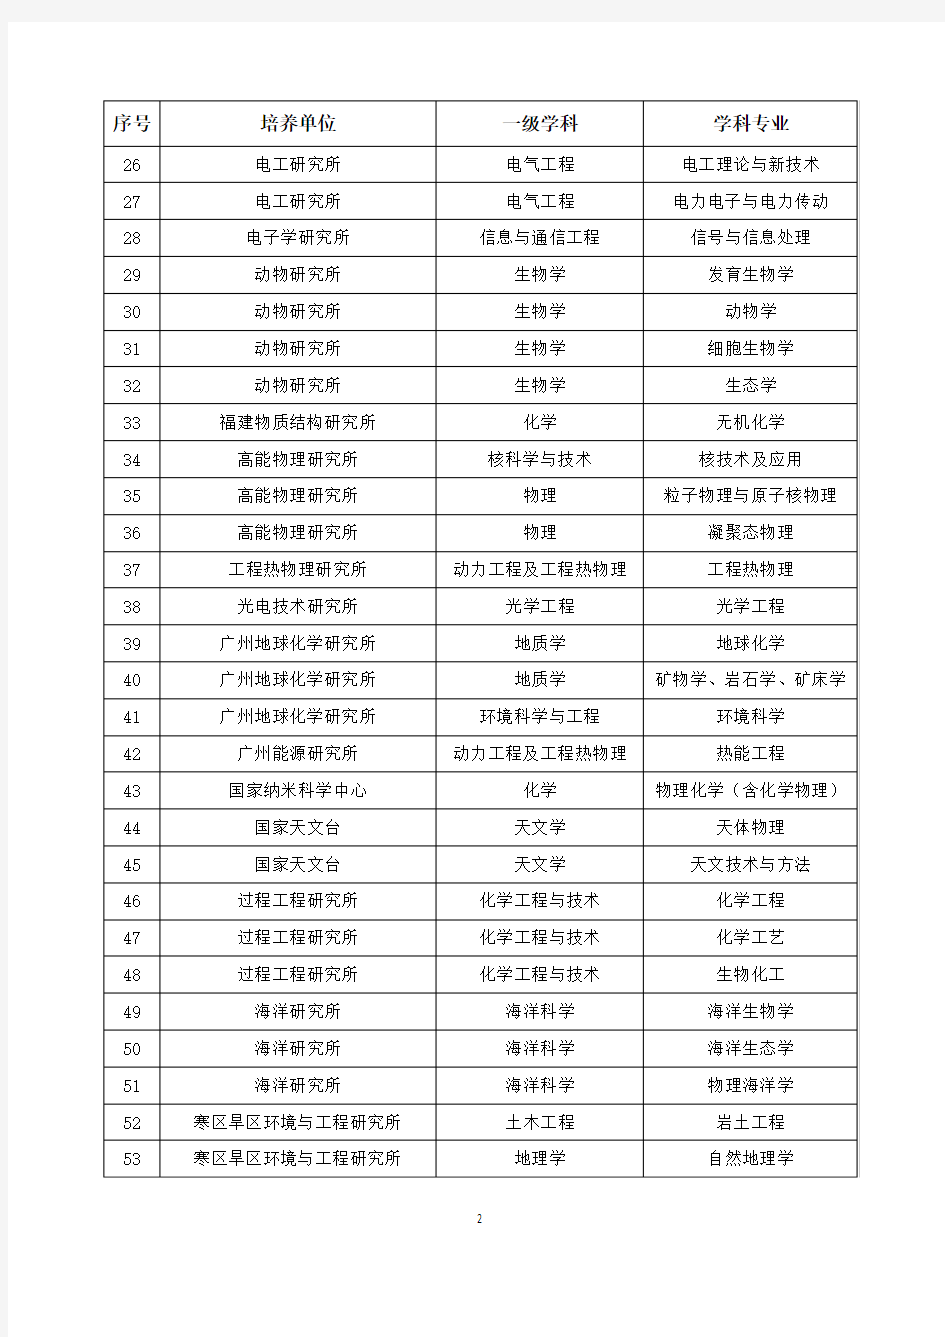 2011年度中国科学院重点学科初选名单